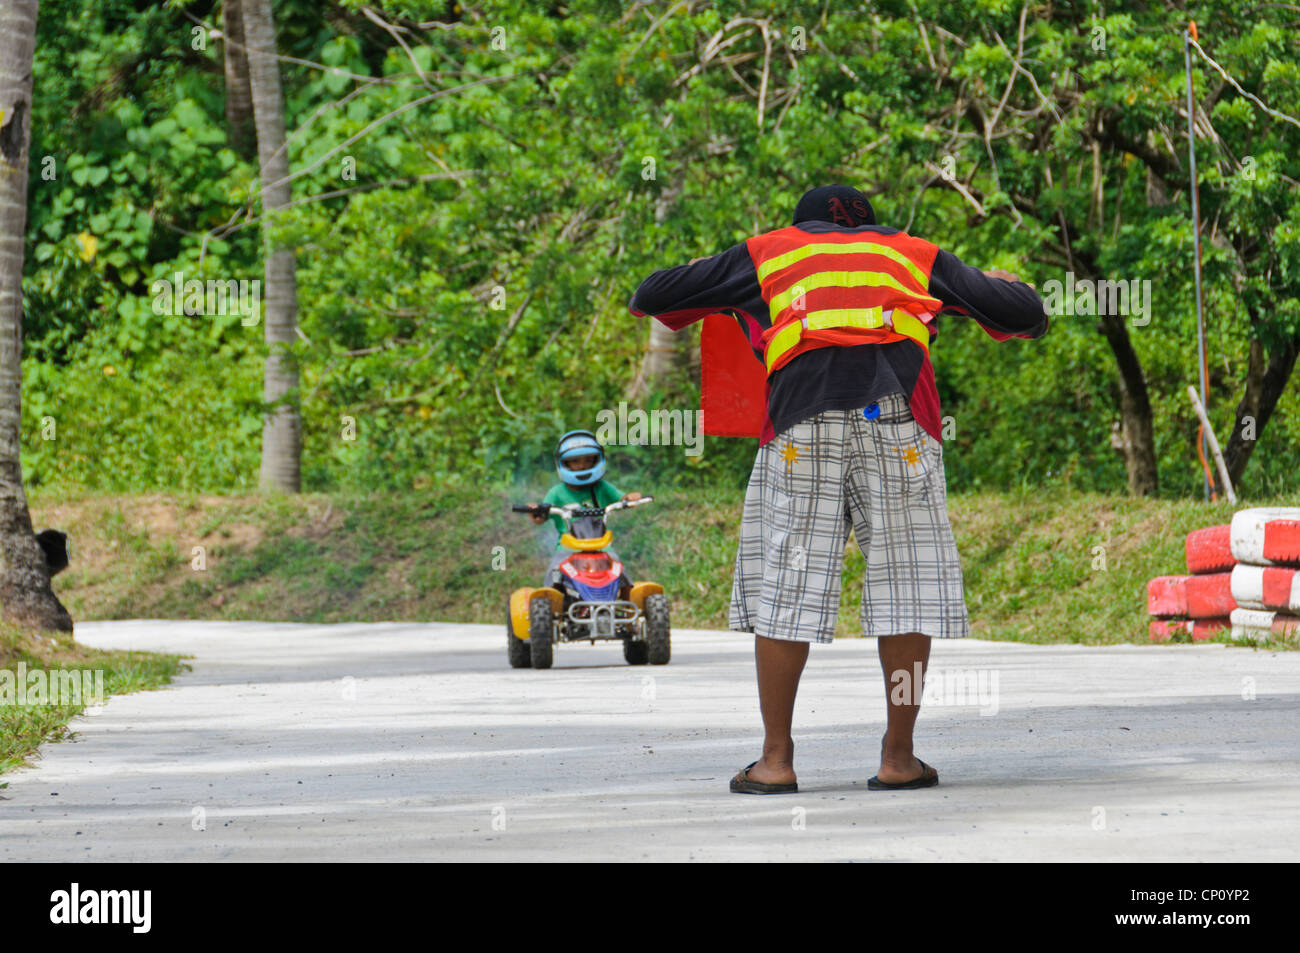 Verfolgen Sie Marschall stoppen kleiner Junge Reiten ATV mit roten Fahne - Adventure Park Puerto Galera Oriental Mindoro Philippinen Asien Stockfoto